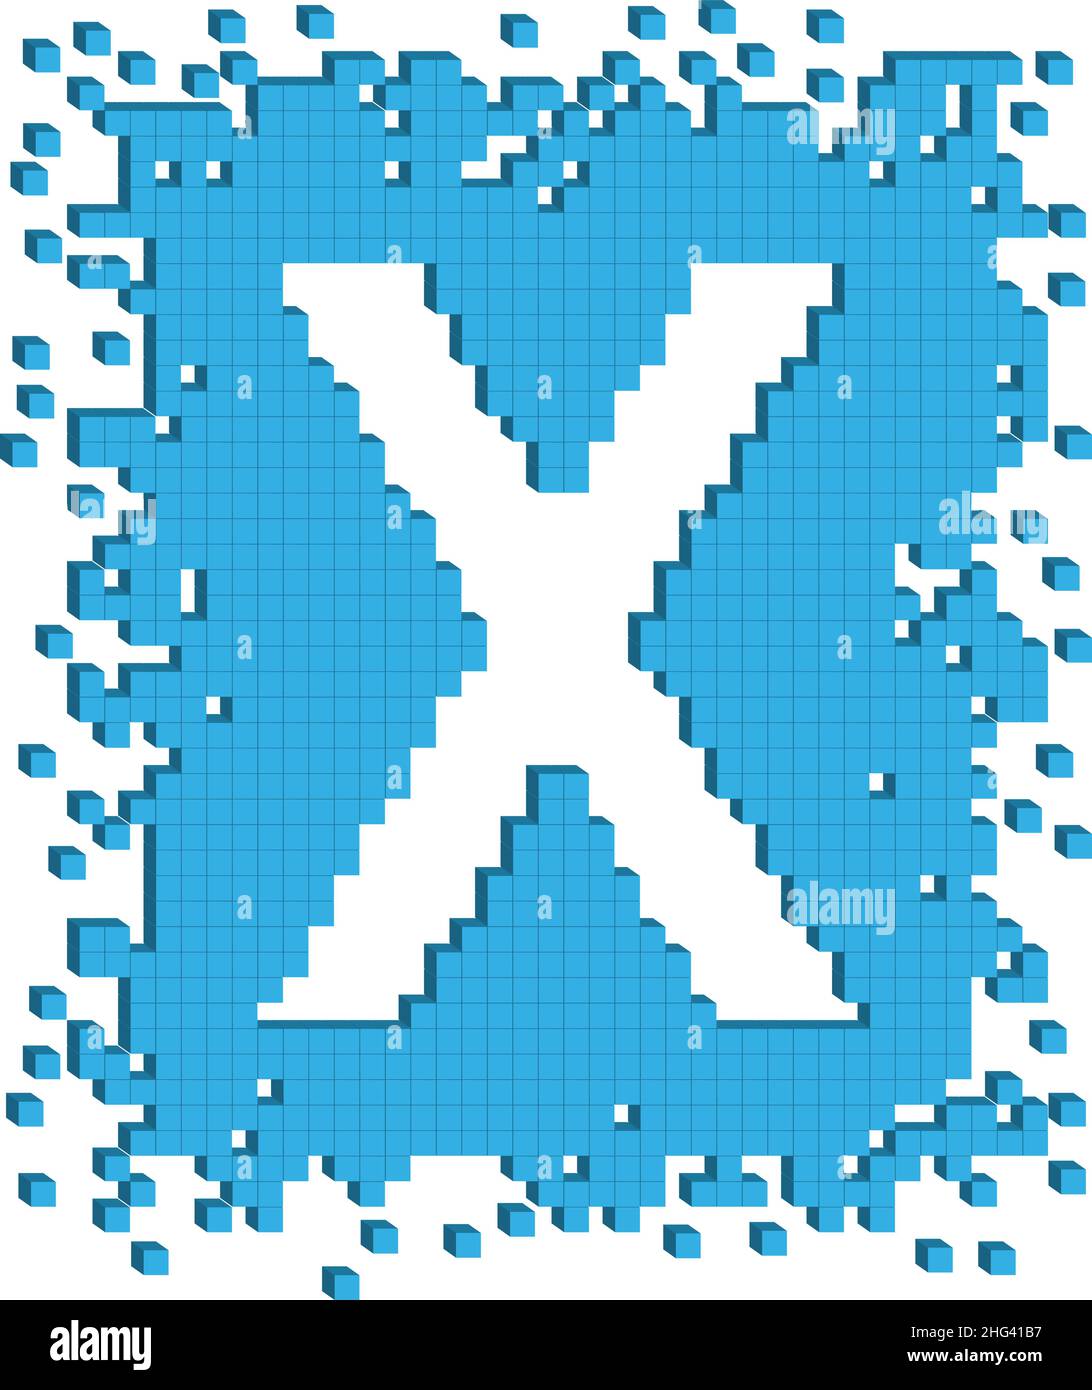 La lettre X dessinée par vecteur est entourée de nombreux petits cubes de couleur bleue Illustration de Vecteur